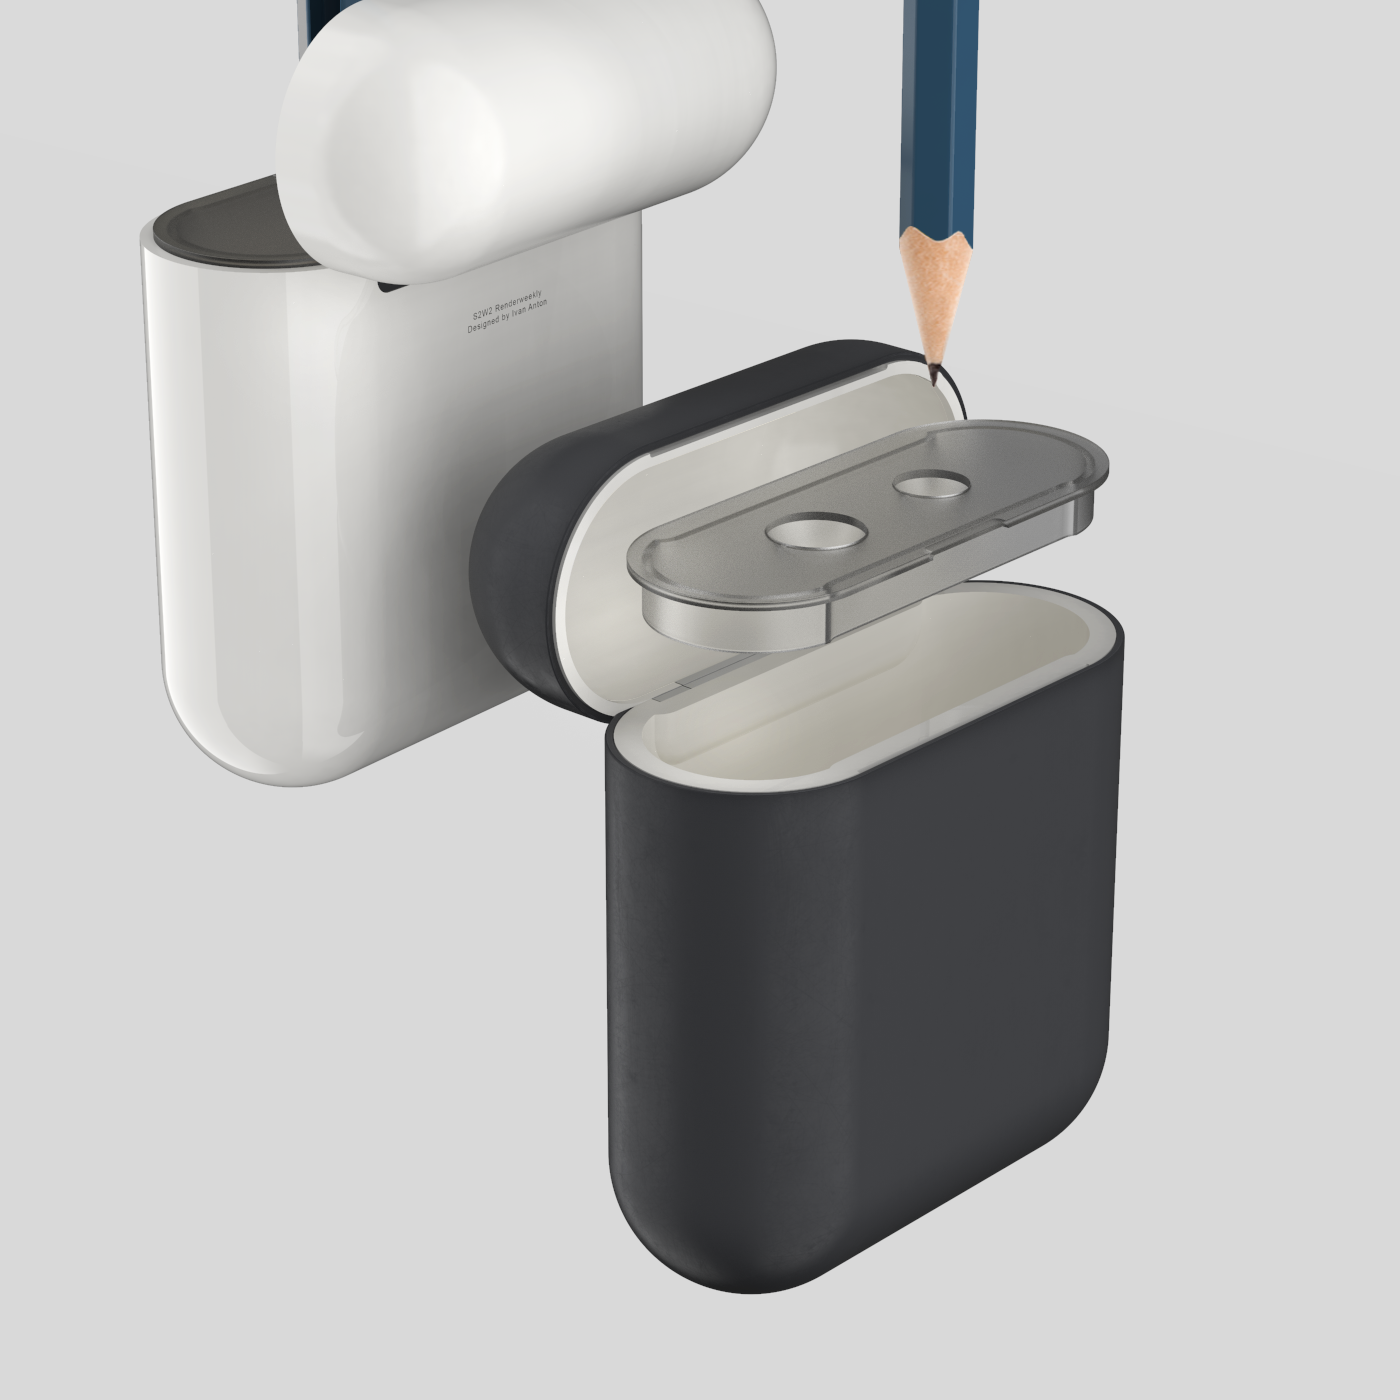 apple sharpener product 3D keyshot Renderweekly Render design airpods